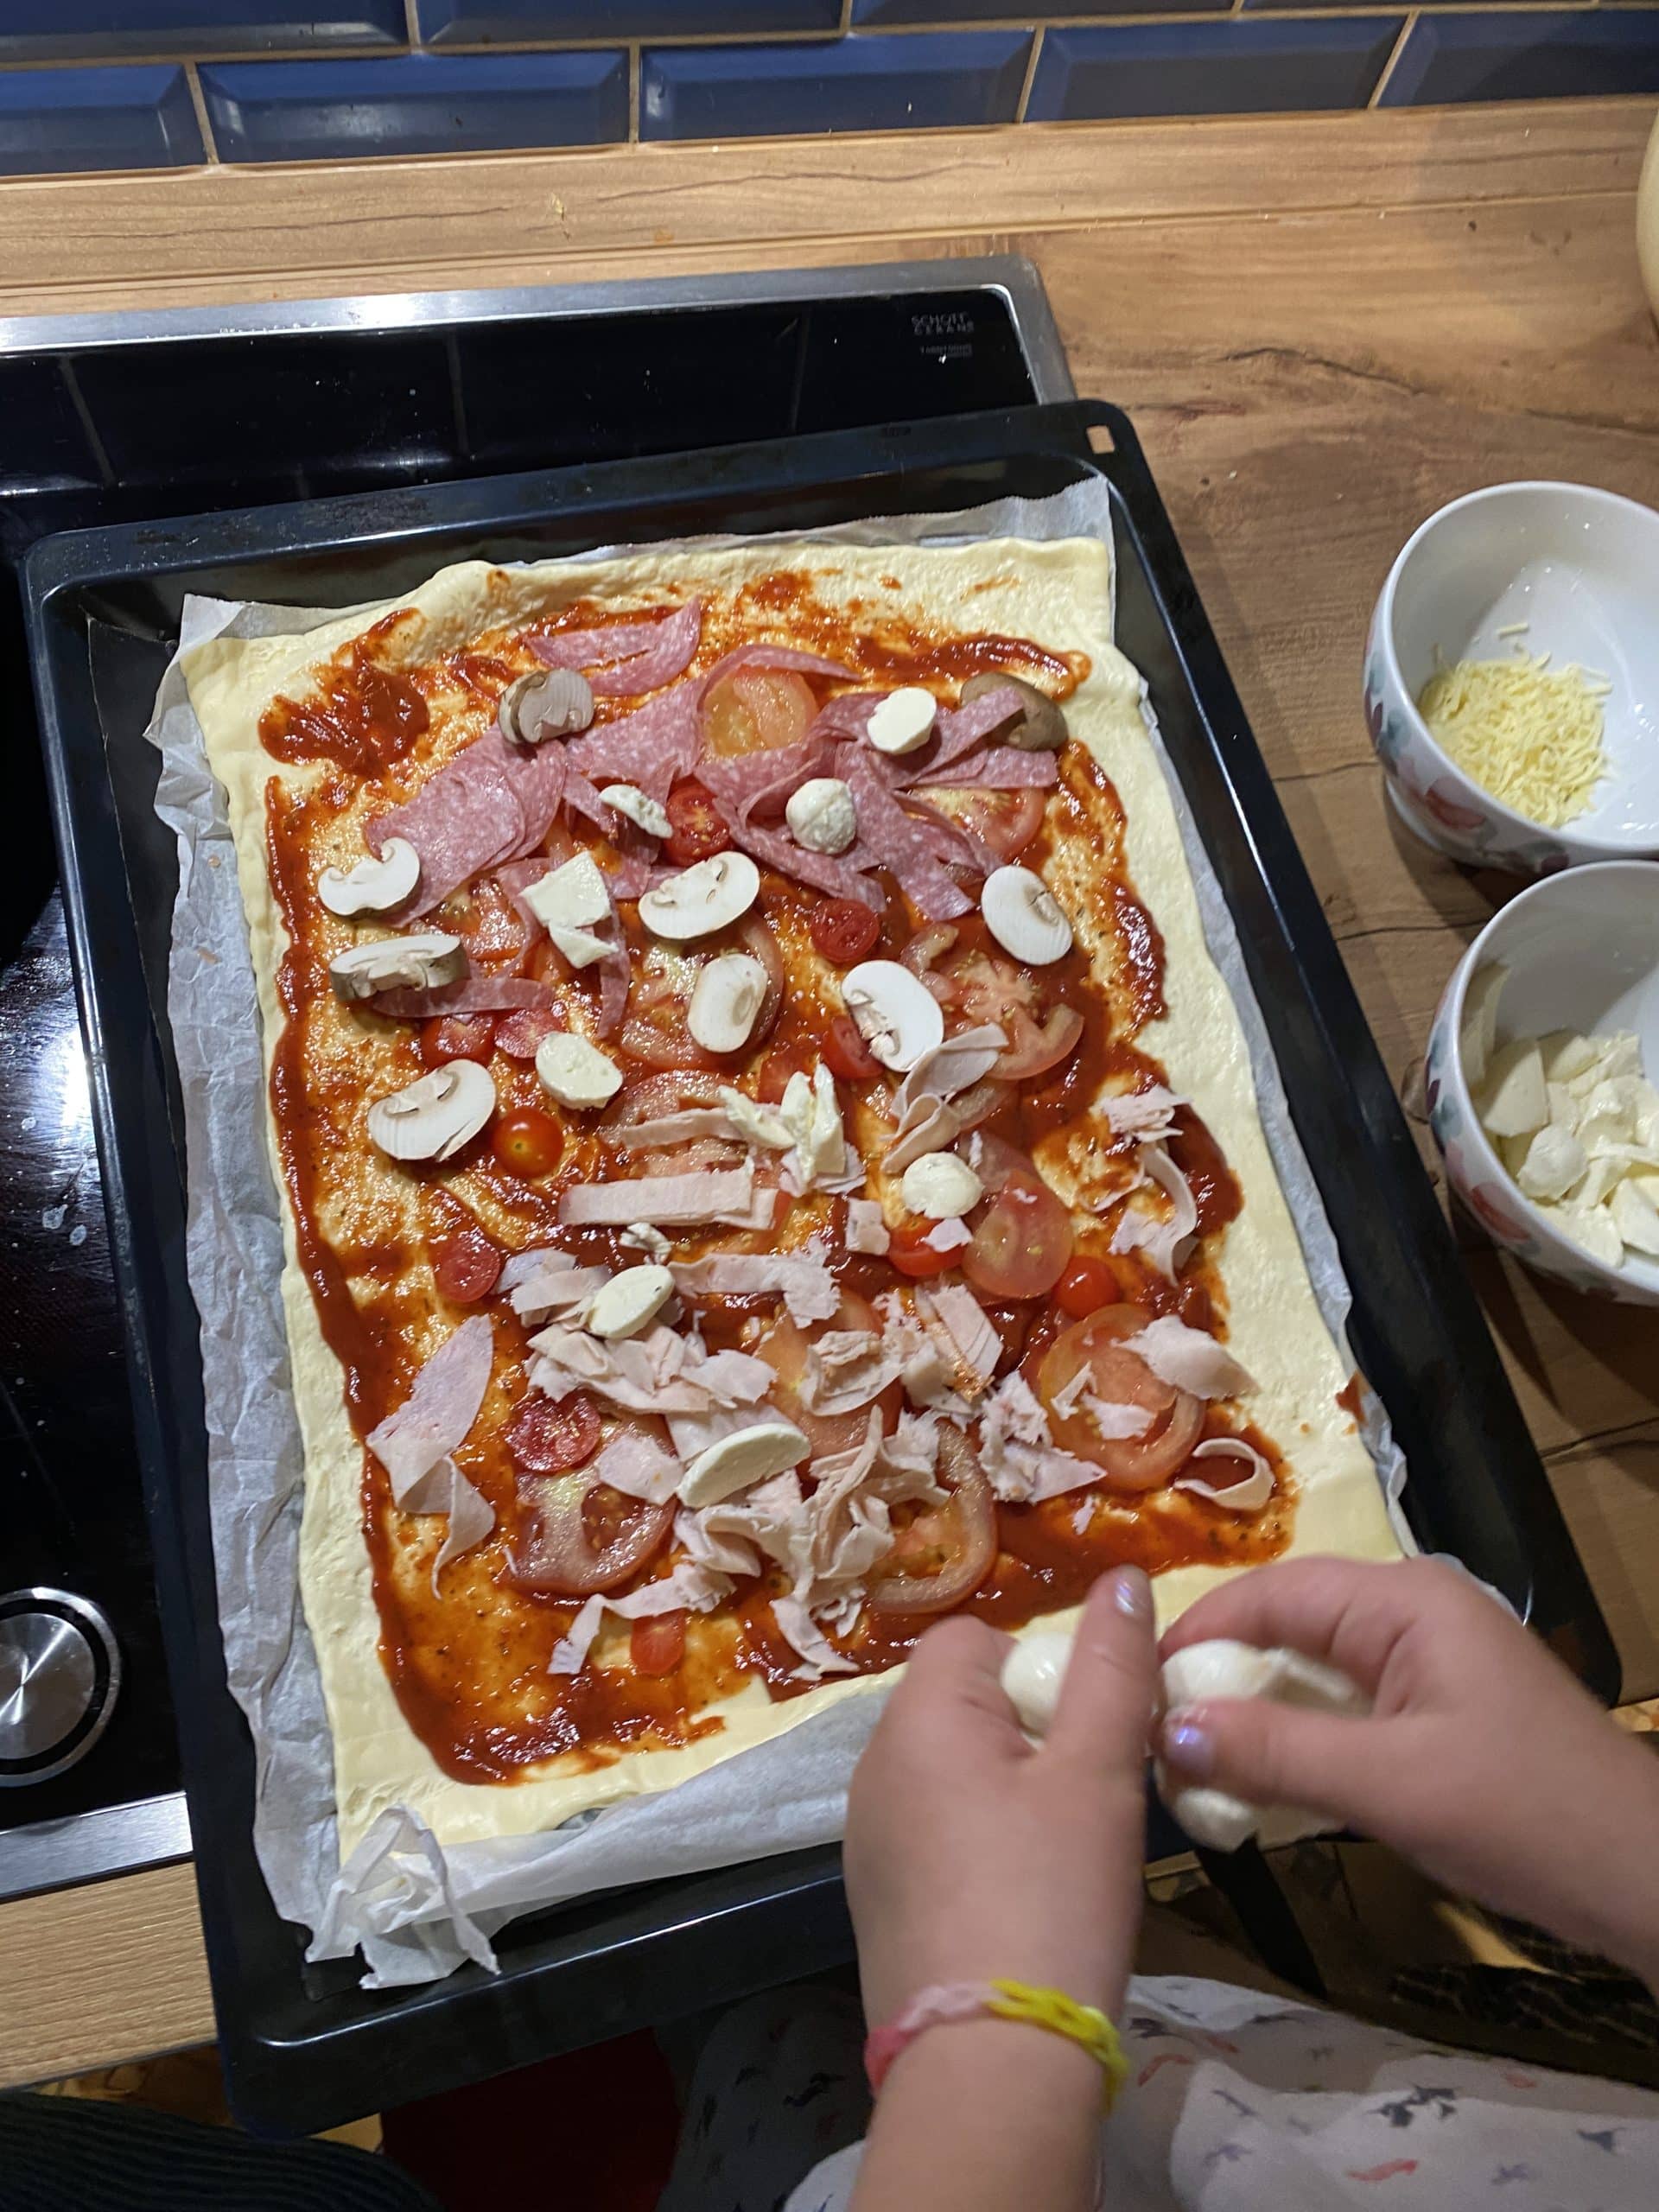 Die kleine Tochter belegt sich dann noch ne Pizza für den Ofen, nun ja.